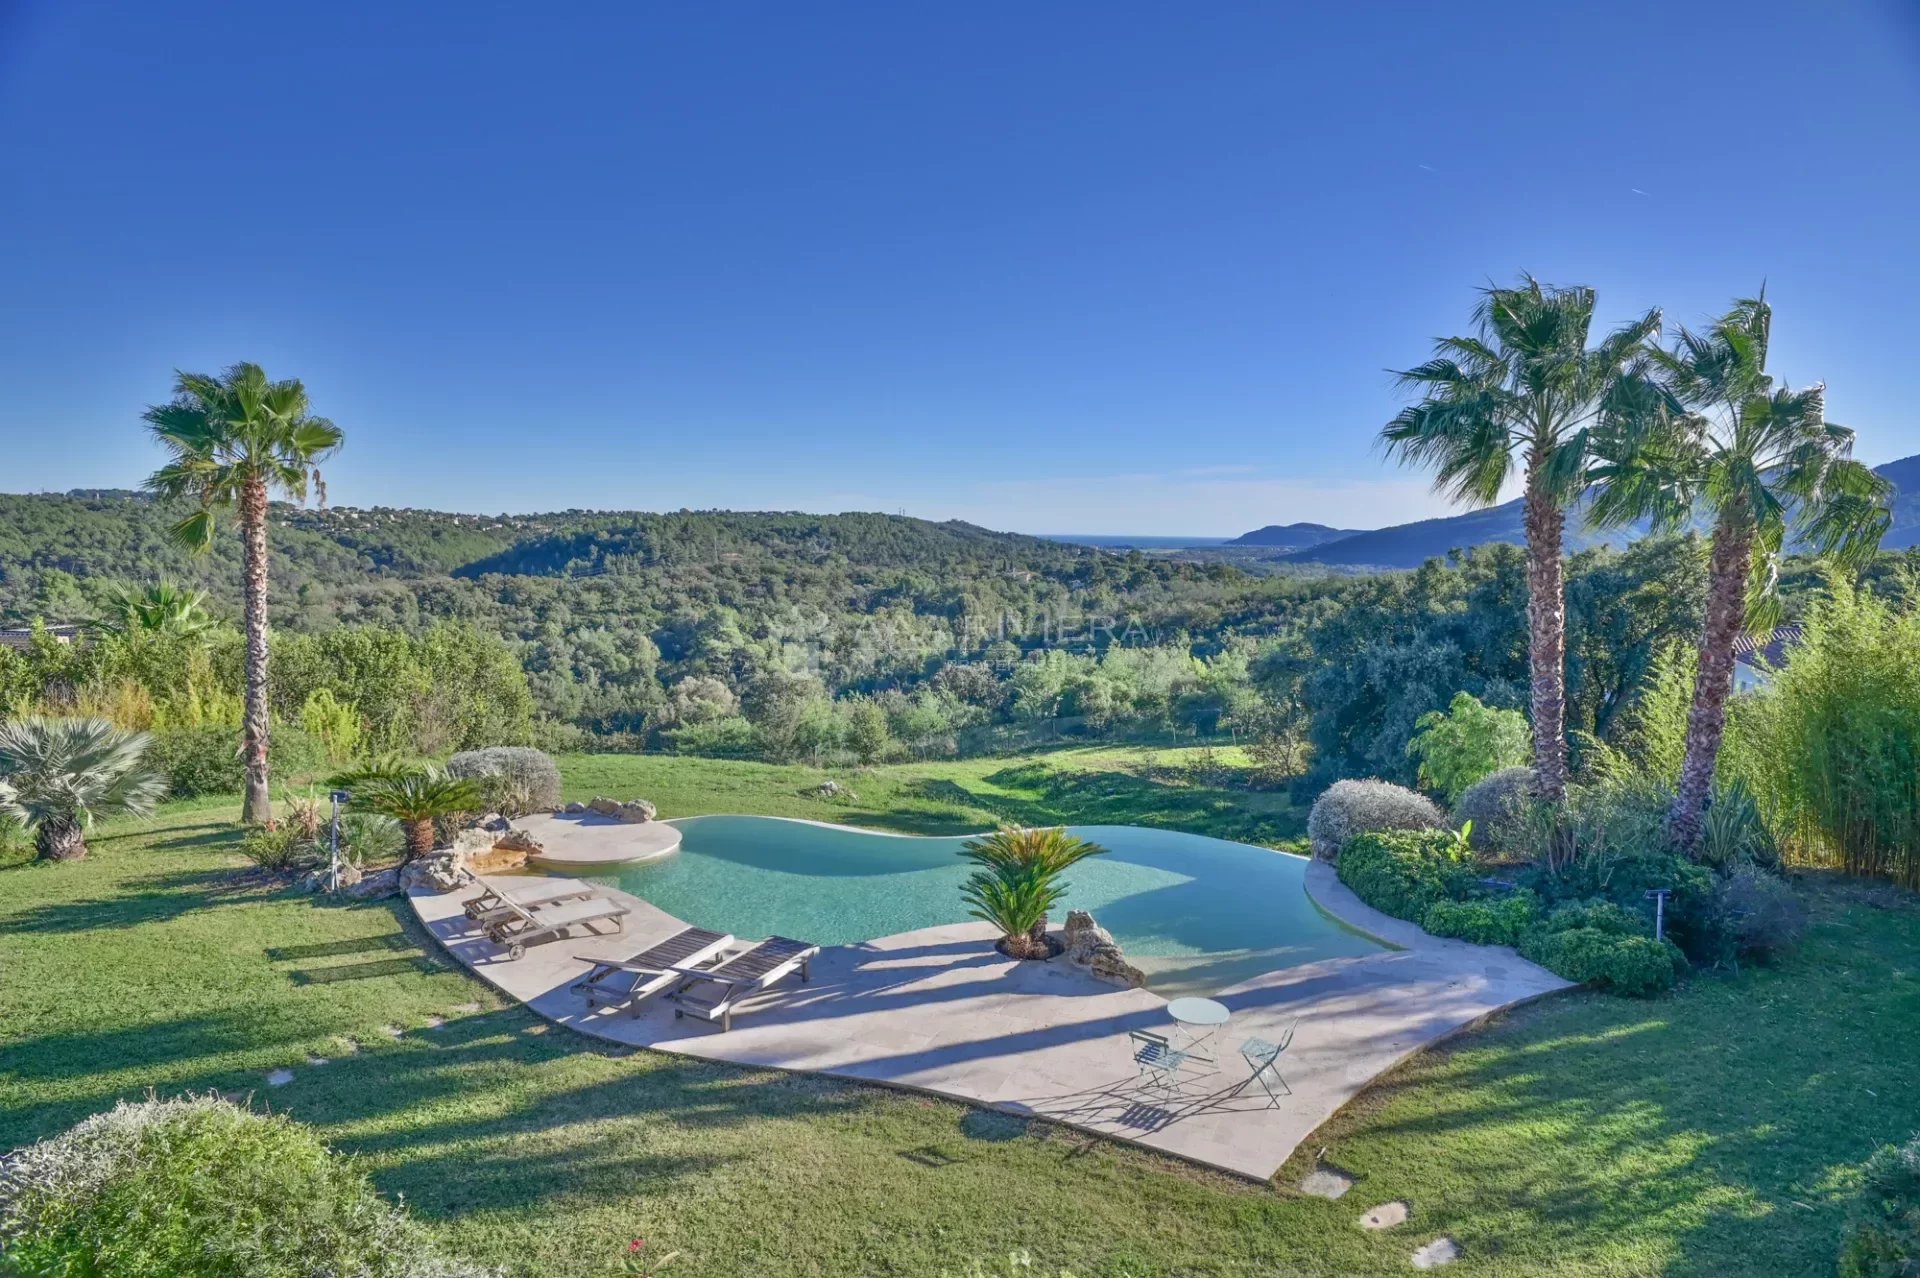 Exclusivité - Proche Cannes - Magnifique propriété avec piscine - Vue panoramique mer et collines  - Calme absolu